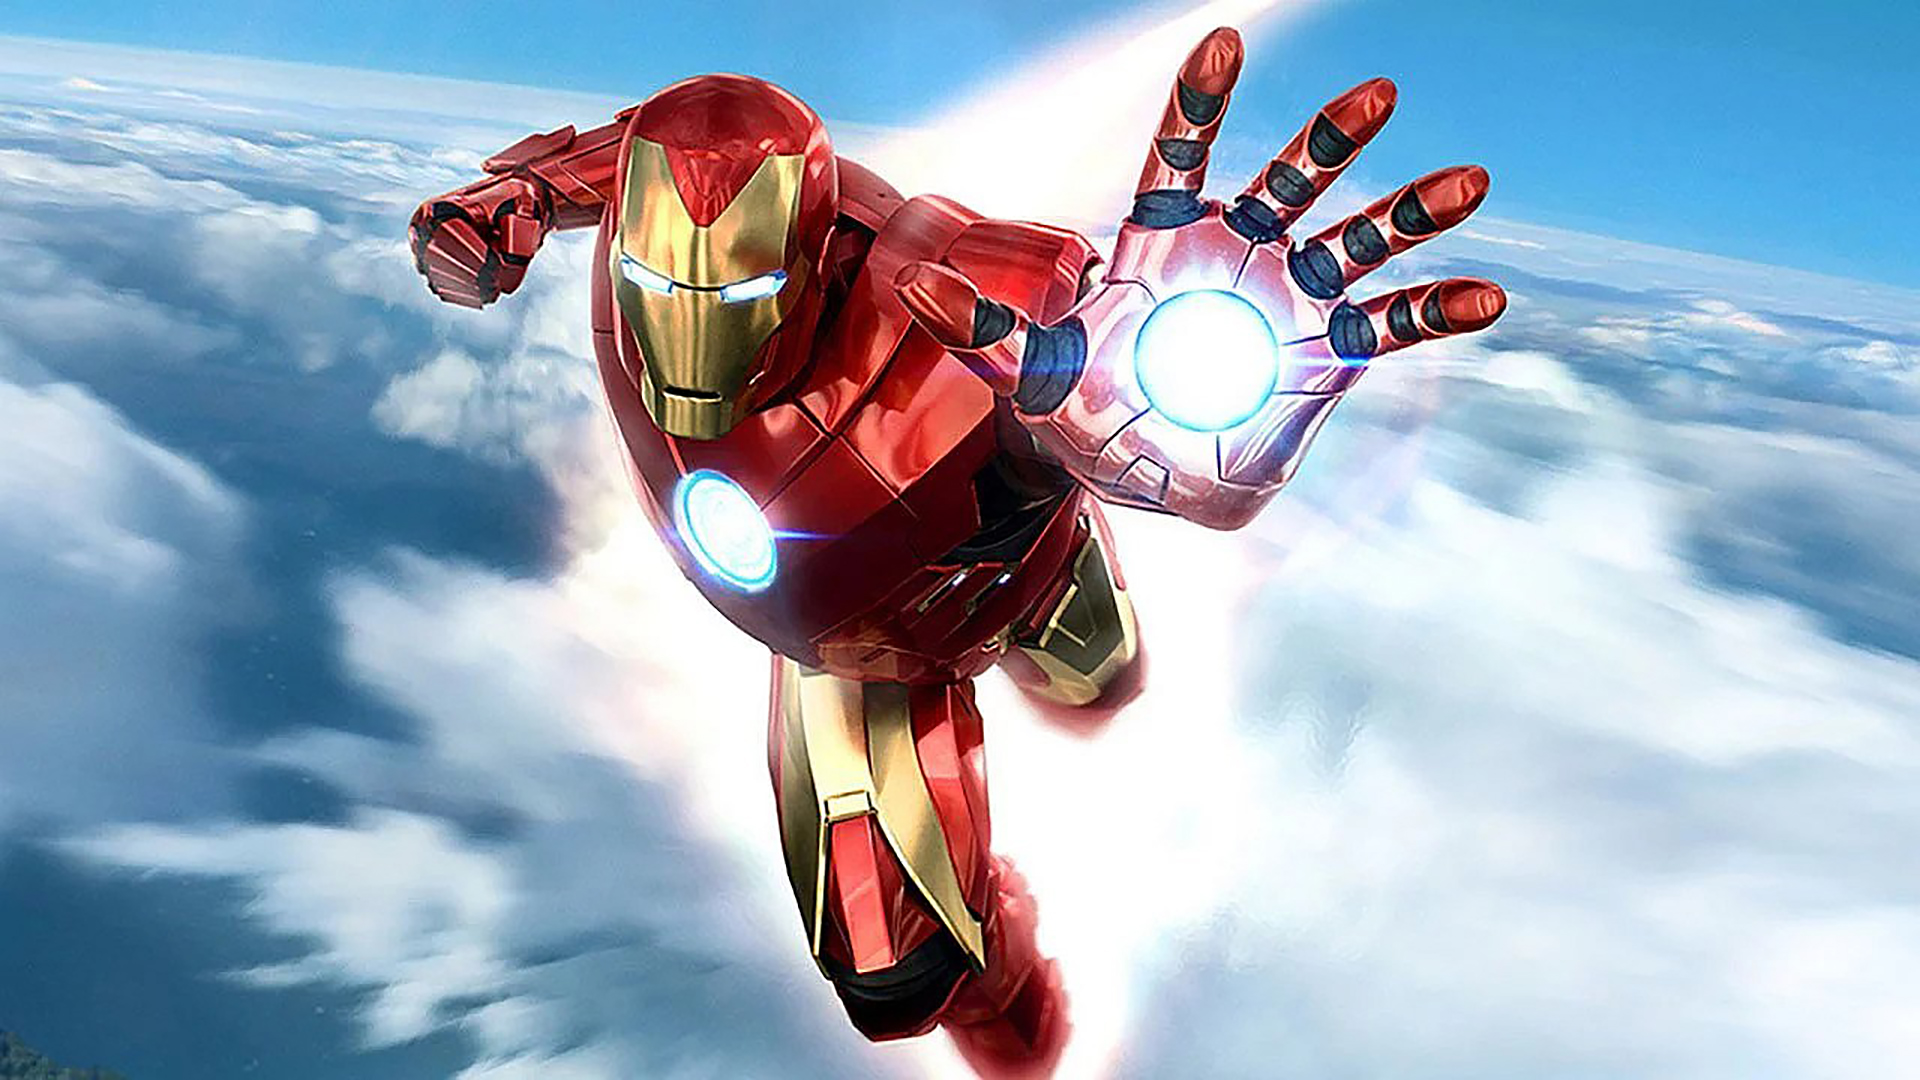 ข่าวลือ! EA กำลังสร้างเกม Marvel ที่อาจจะเป็น Iron Man